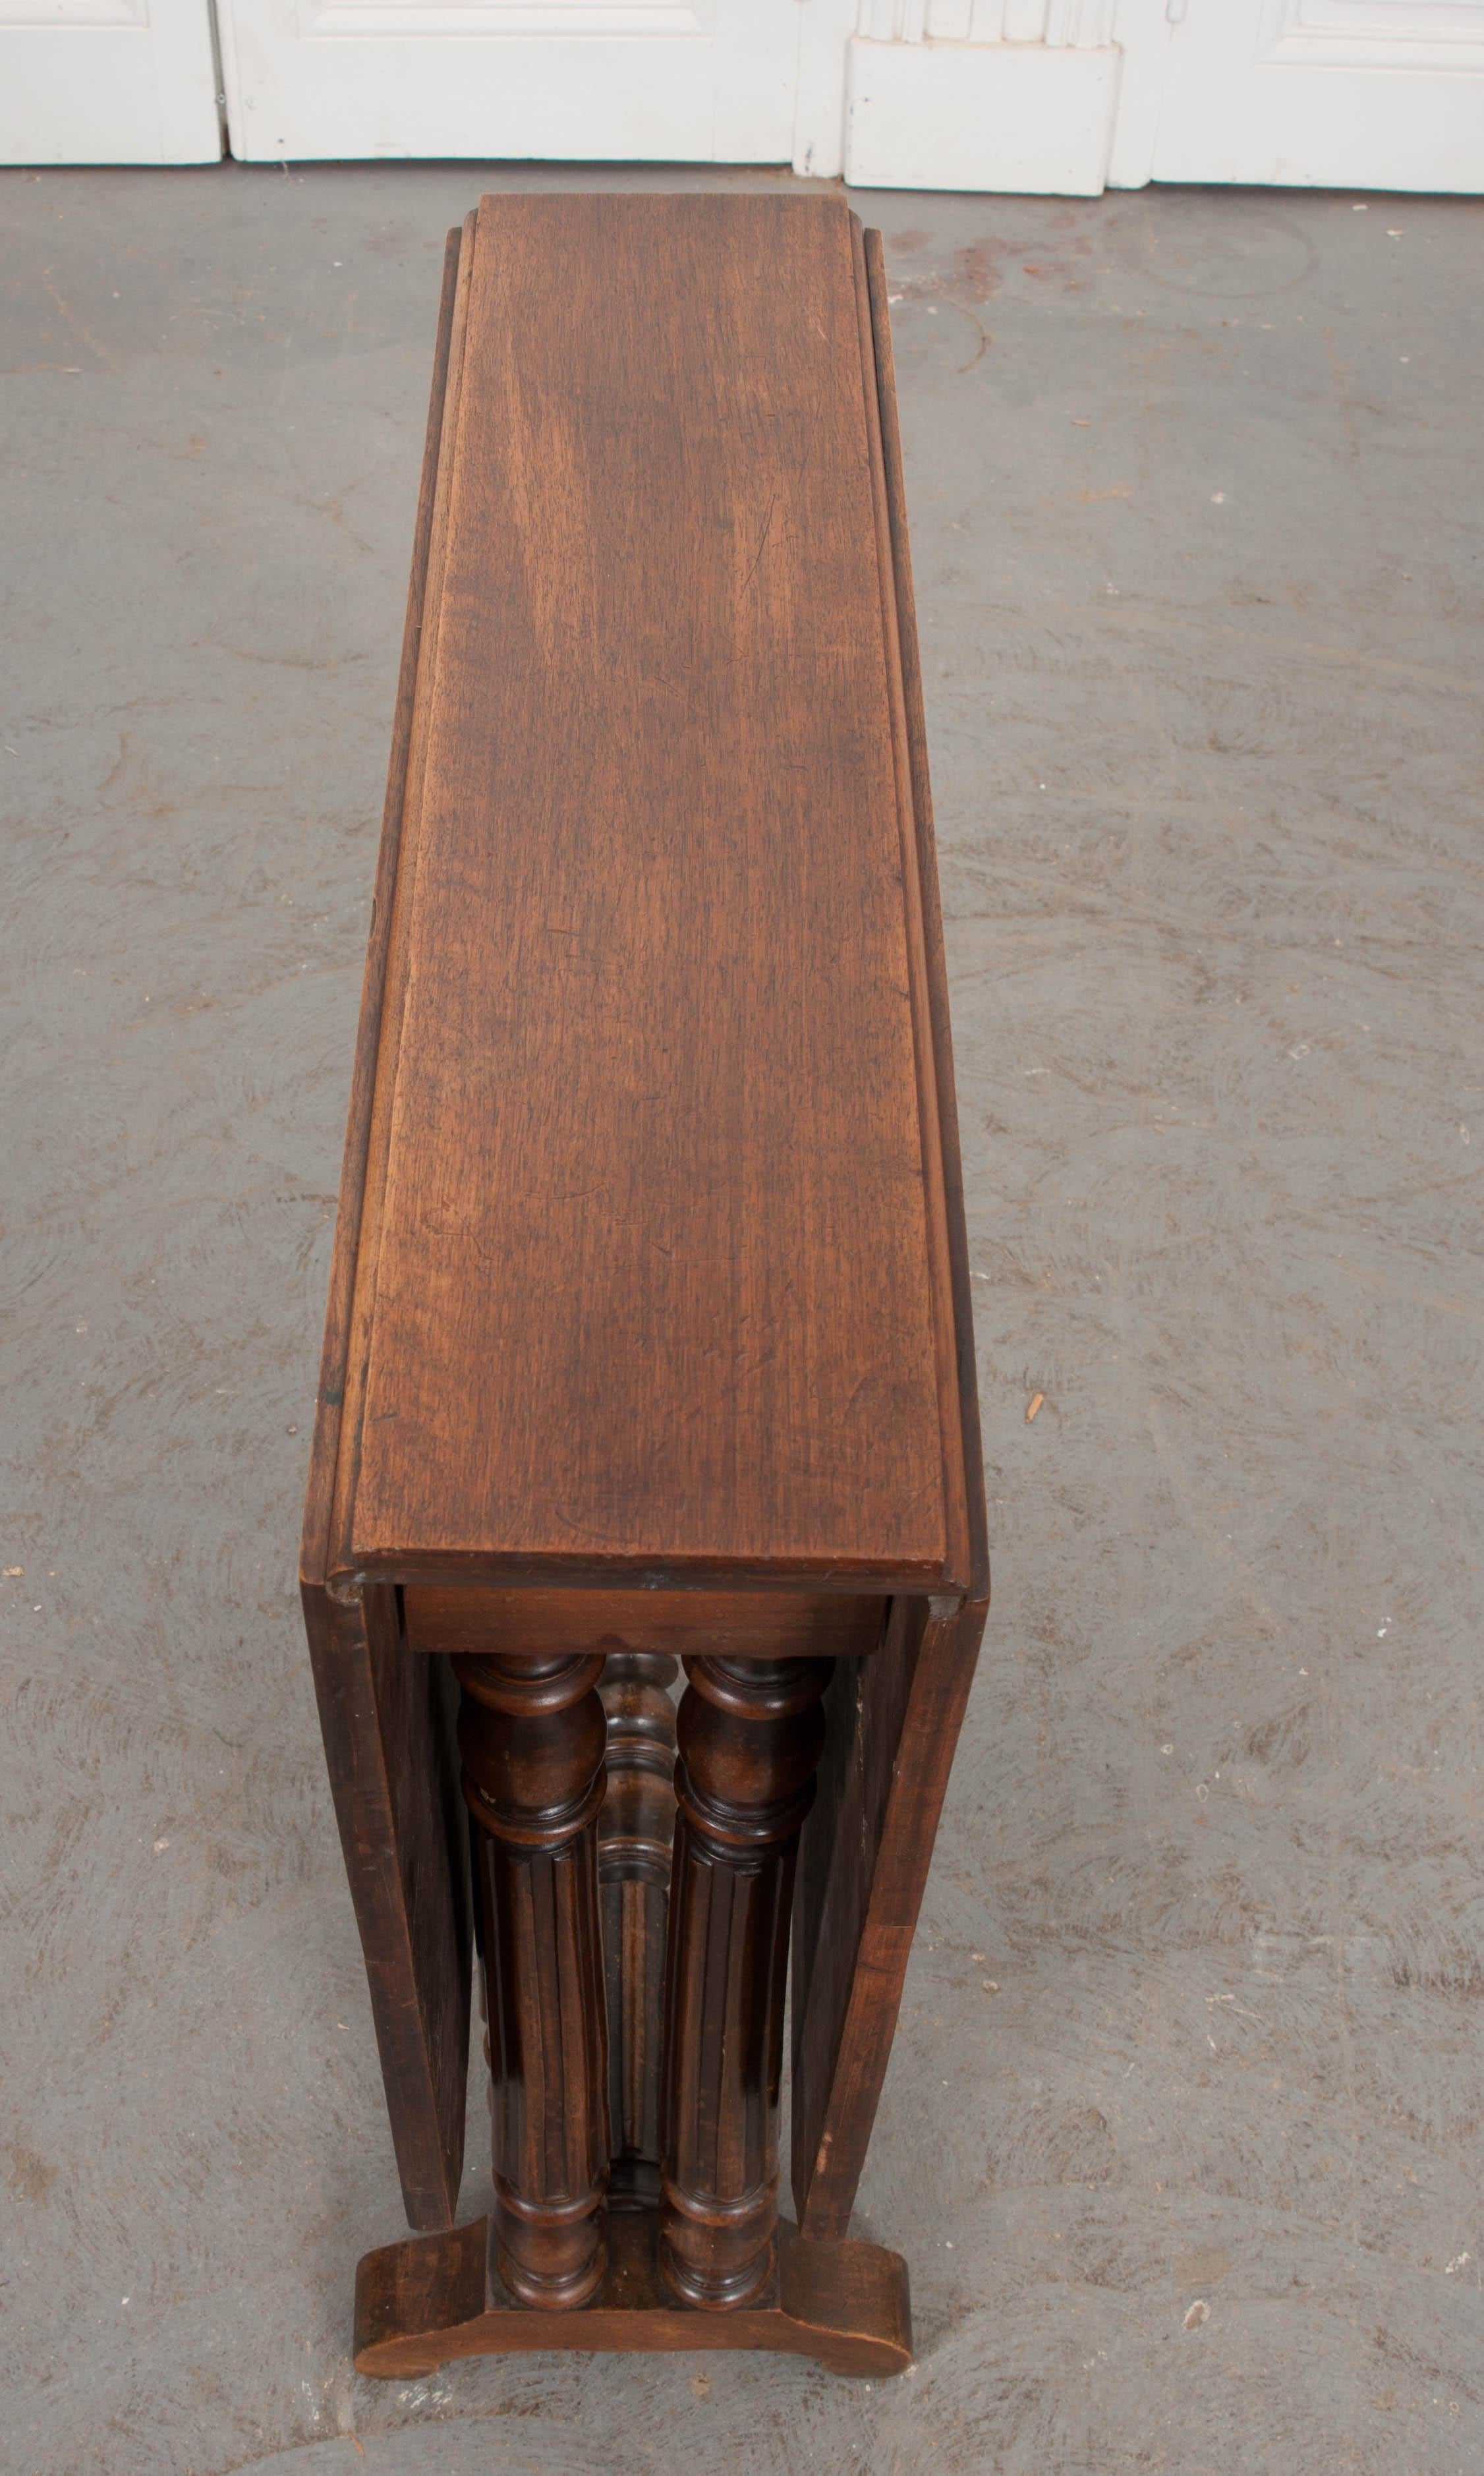 Hardwood English 19th Century William and Mary-Style Walnut Gate-Leg Table